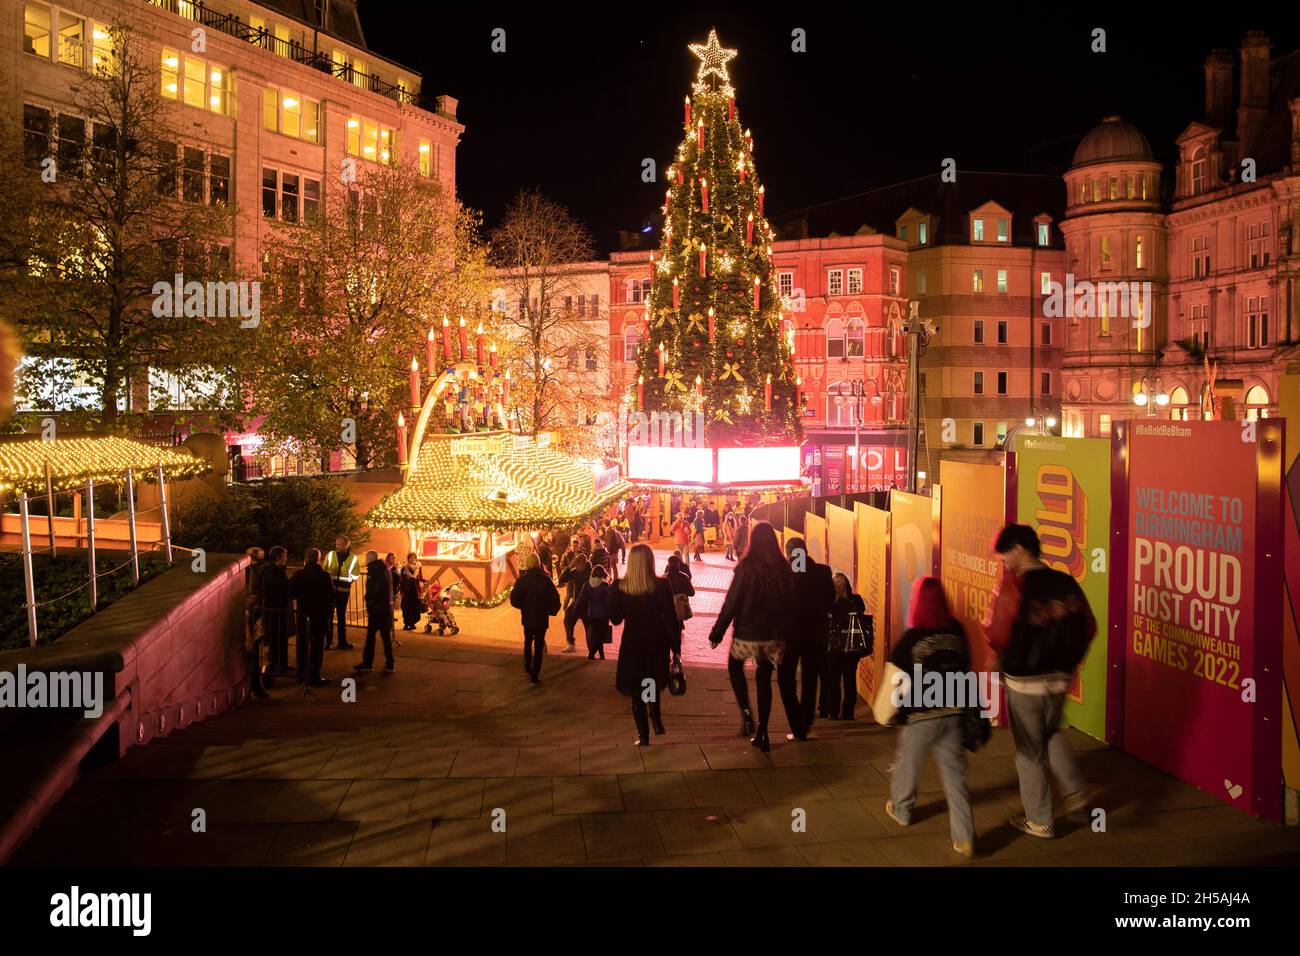 Le marché de Noël de Birmingham Francfort 2021.L'événement a été annulé en 2020 en raison des restrictions de Covid.Photo des attractions du marché de Victoria Square. Banque D'Images